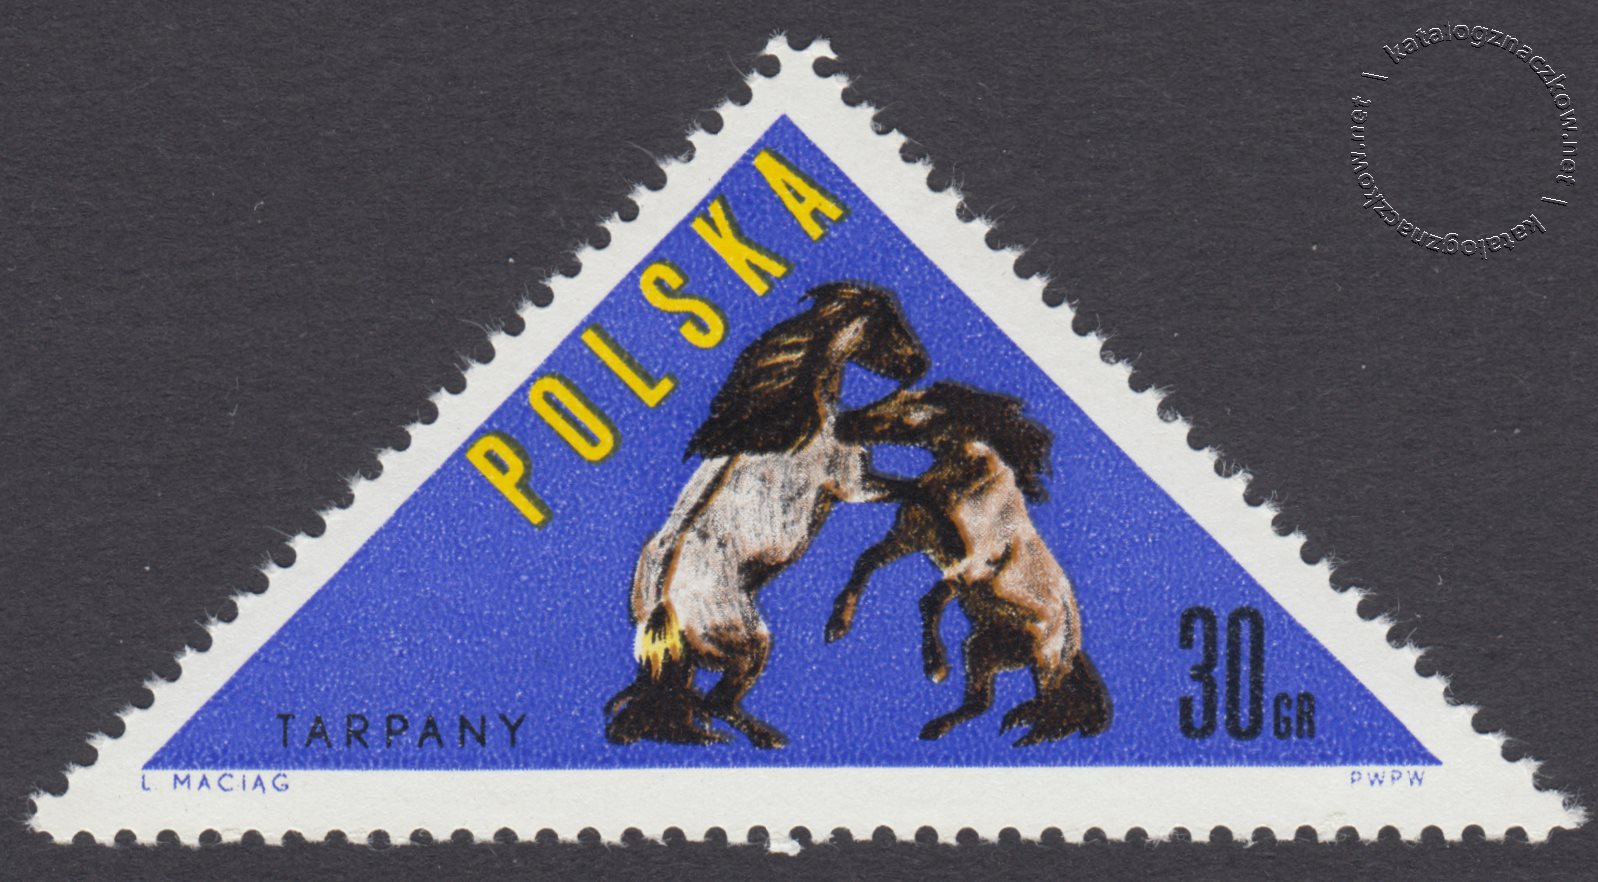 Konie polskie znaczek nr 1300